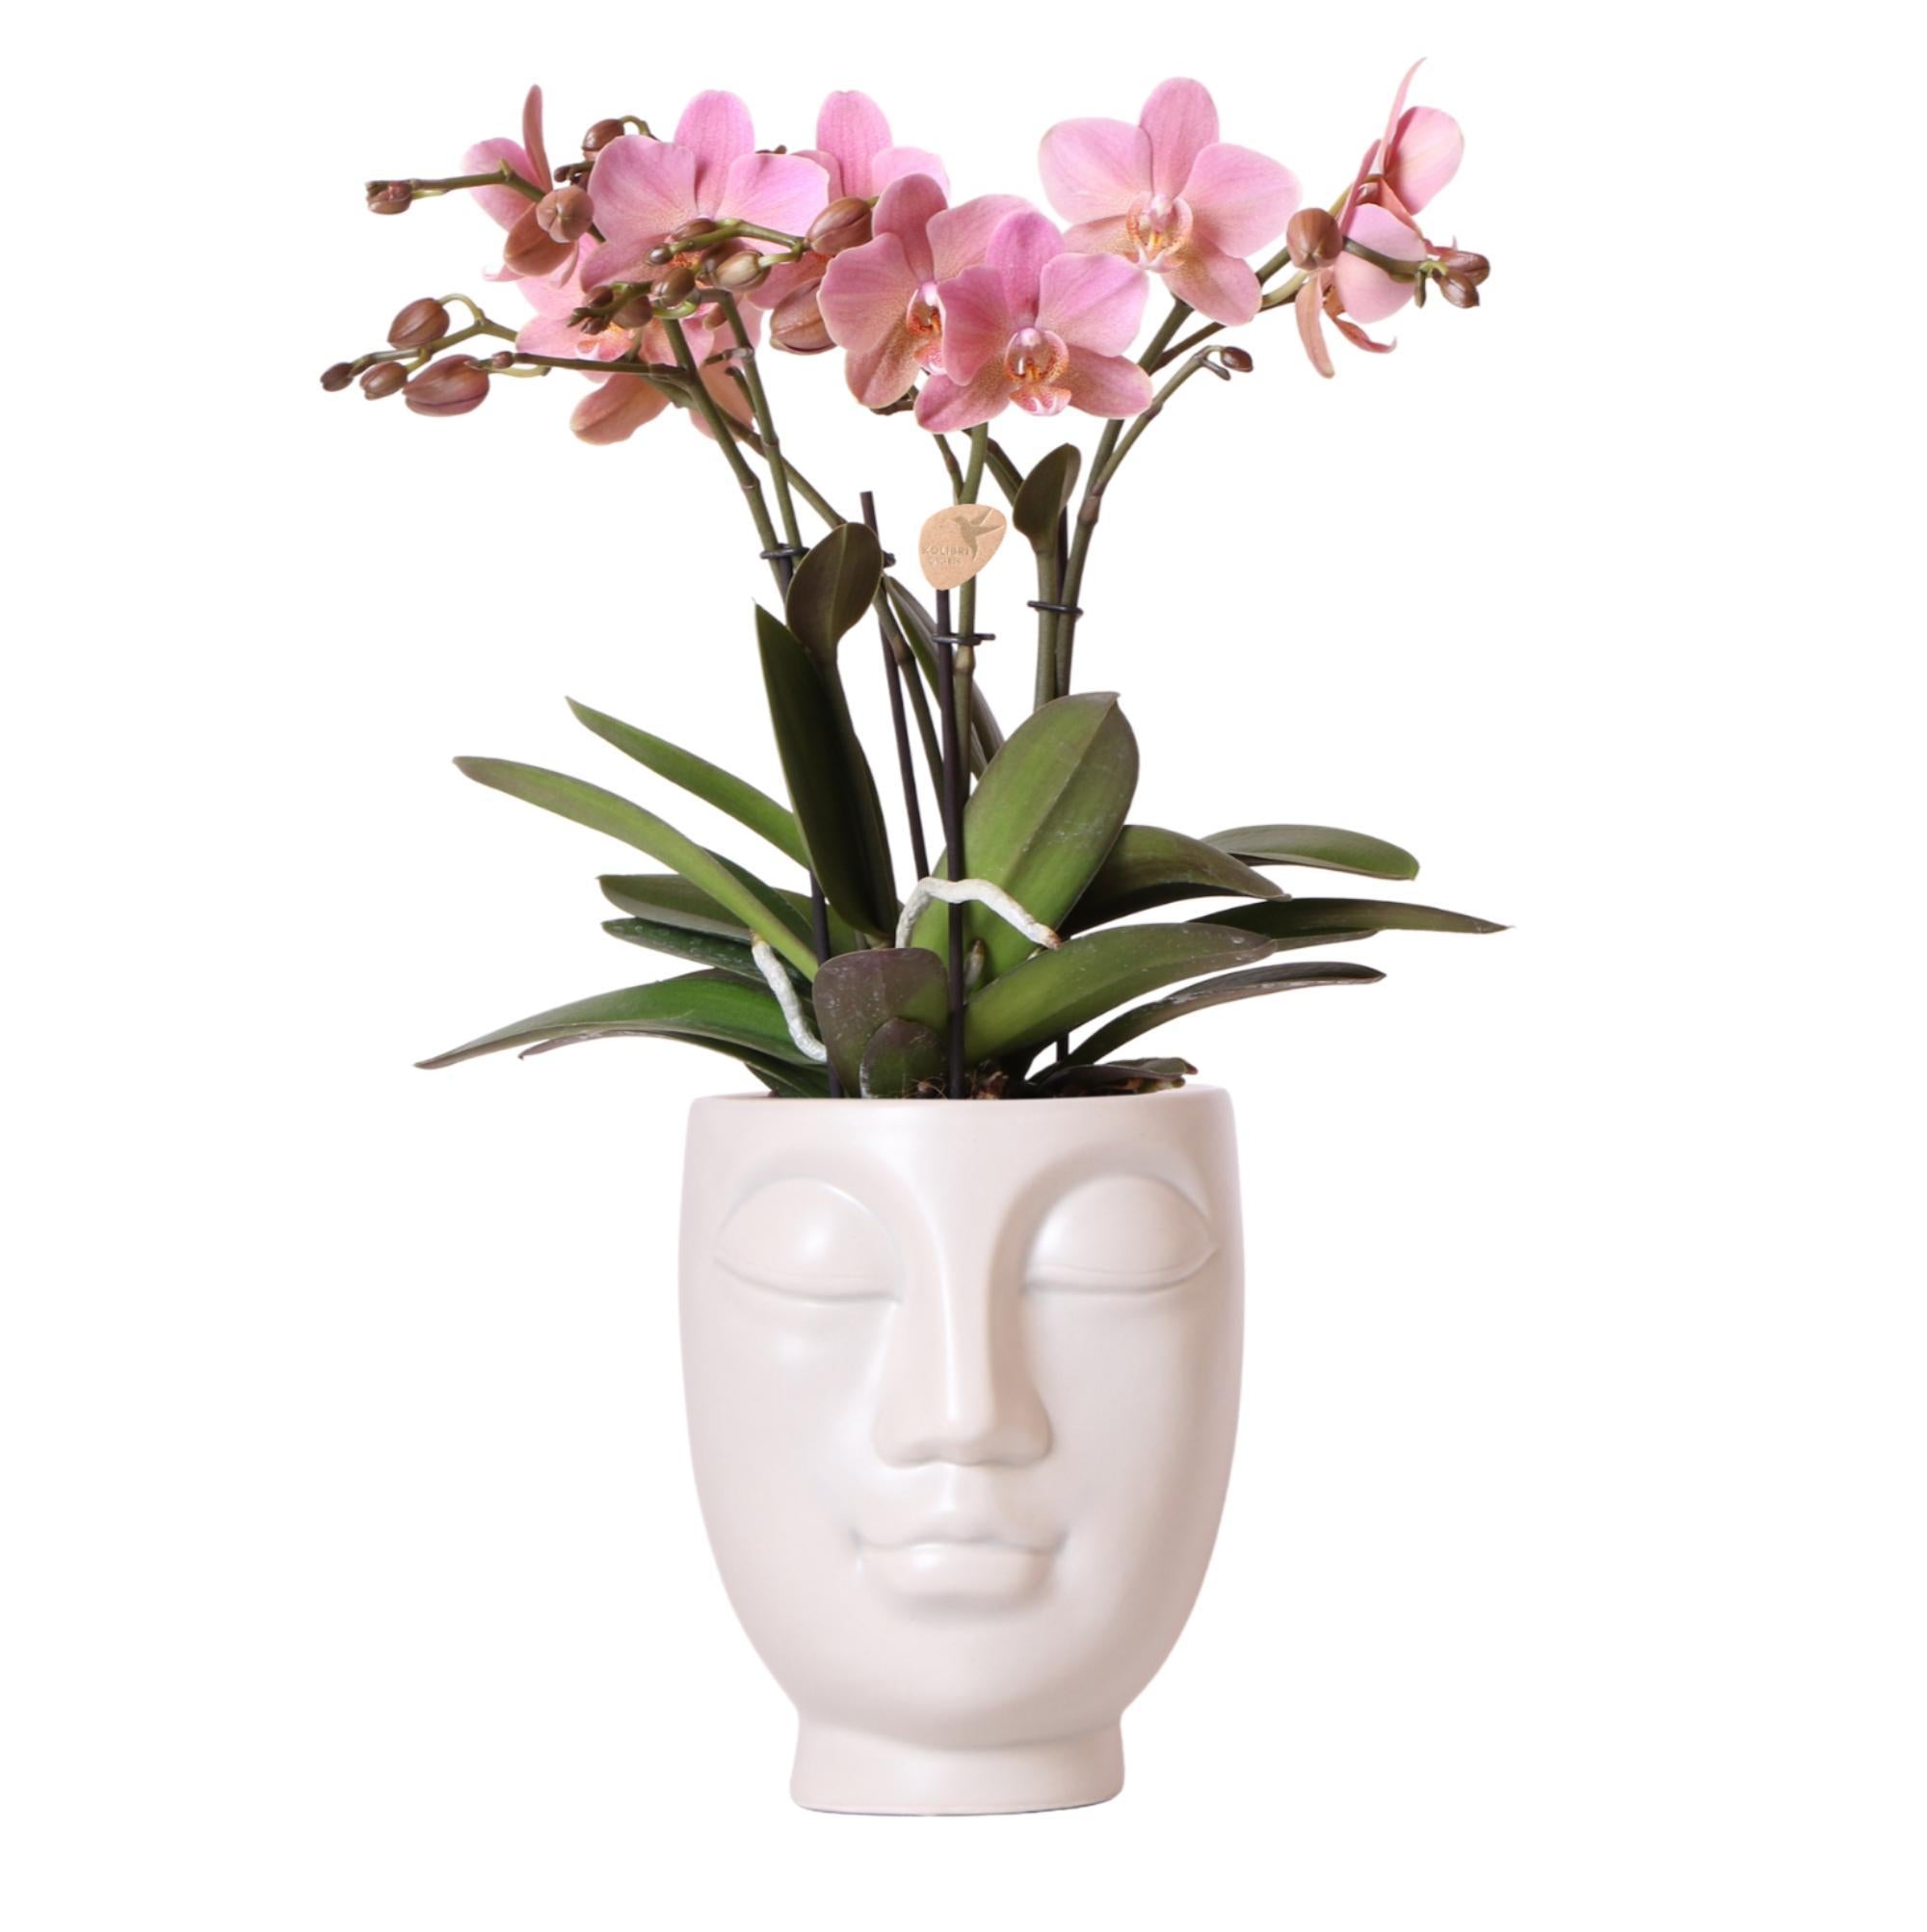 kolibriorchids Kolibri Orchids - Orchidées colibris - Orchidée phalaenopsis rose en pot blanc face-à-face - taille du pot 12 cm